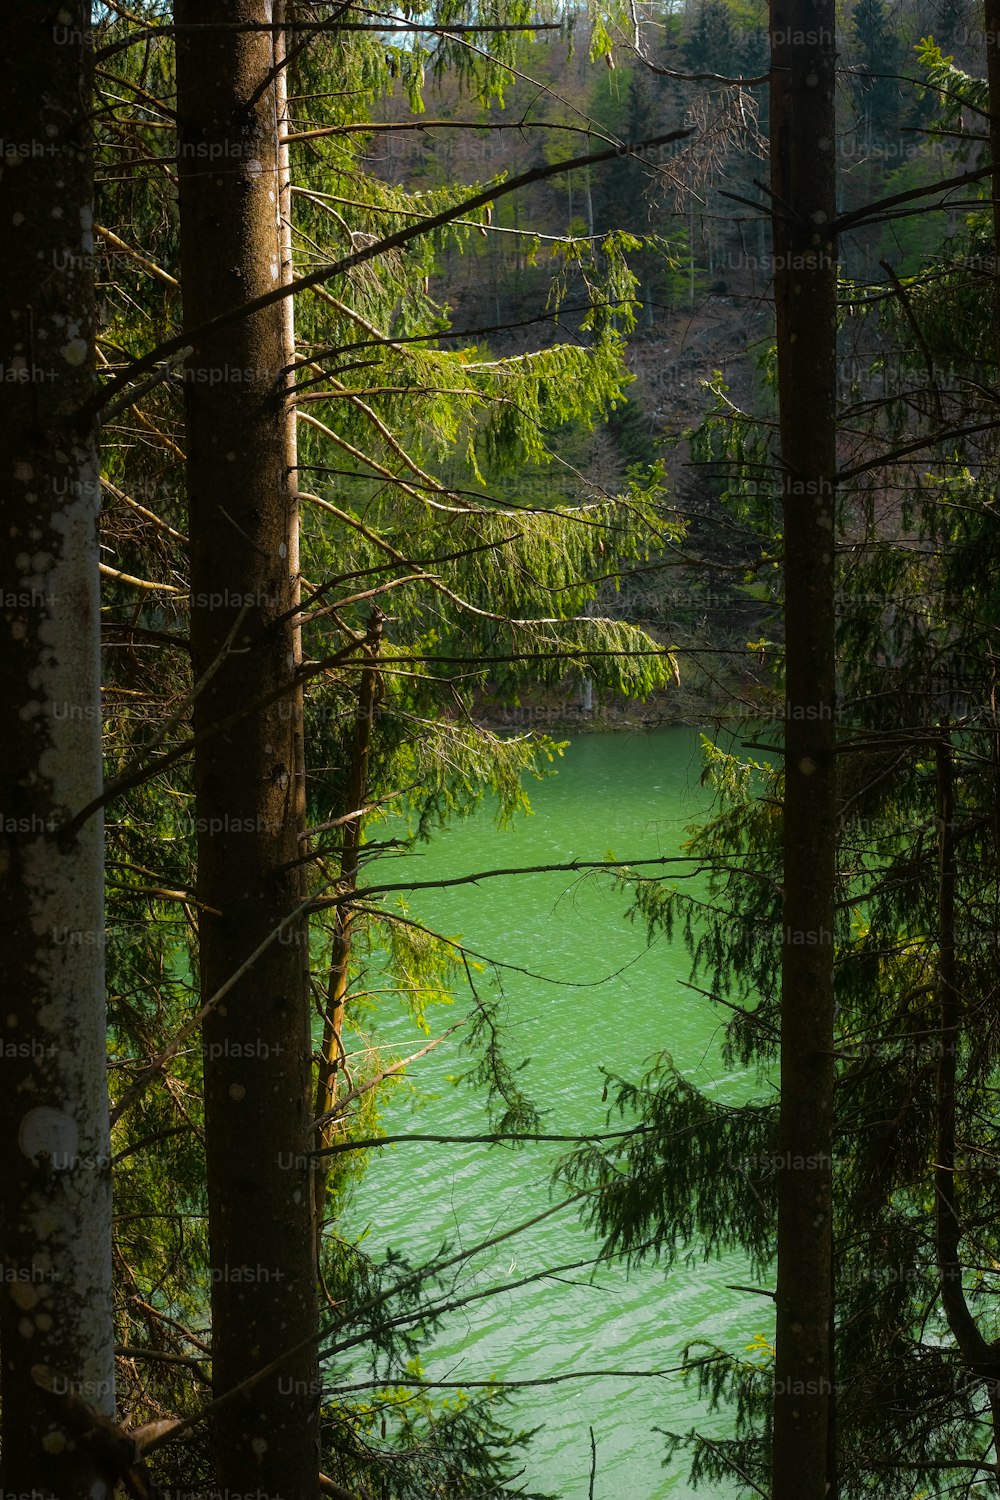 Ein Gewässer umgeben von Bäumen in einem Wald